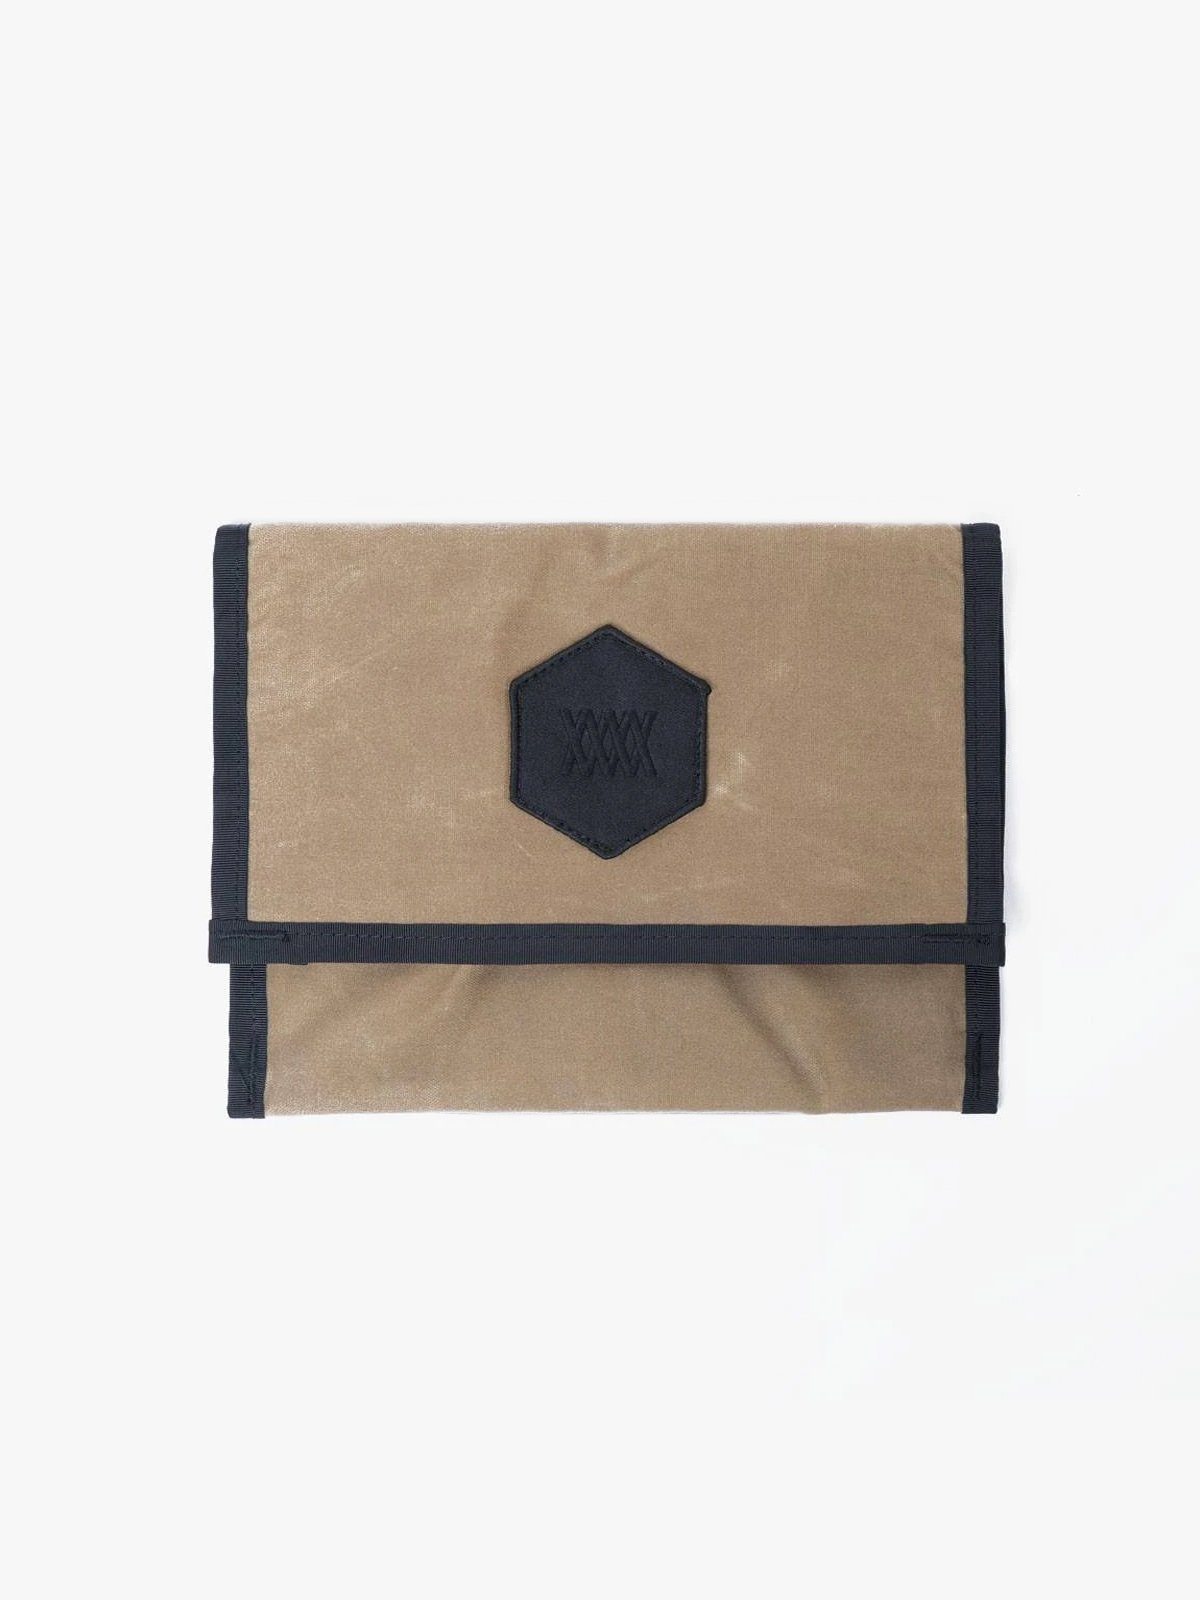 Arkiv Mini Folio von Mission Workshop - Wetterfeste Taschen und technische Bekleidung - San Francisco & Los Angeles - Für die Ewigkeit gebaut - Garantiert